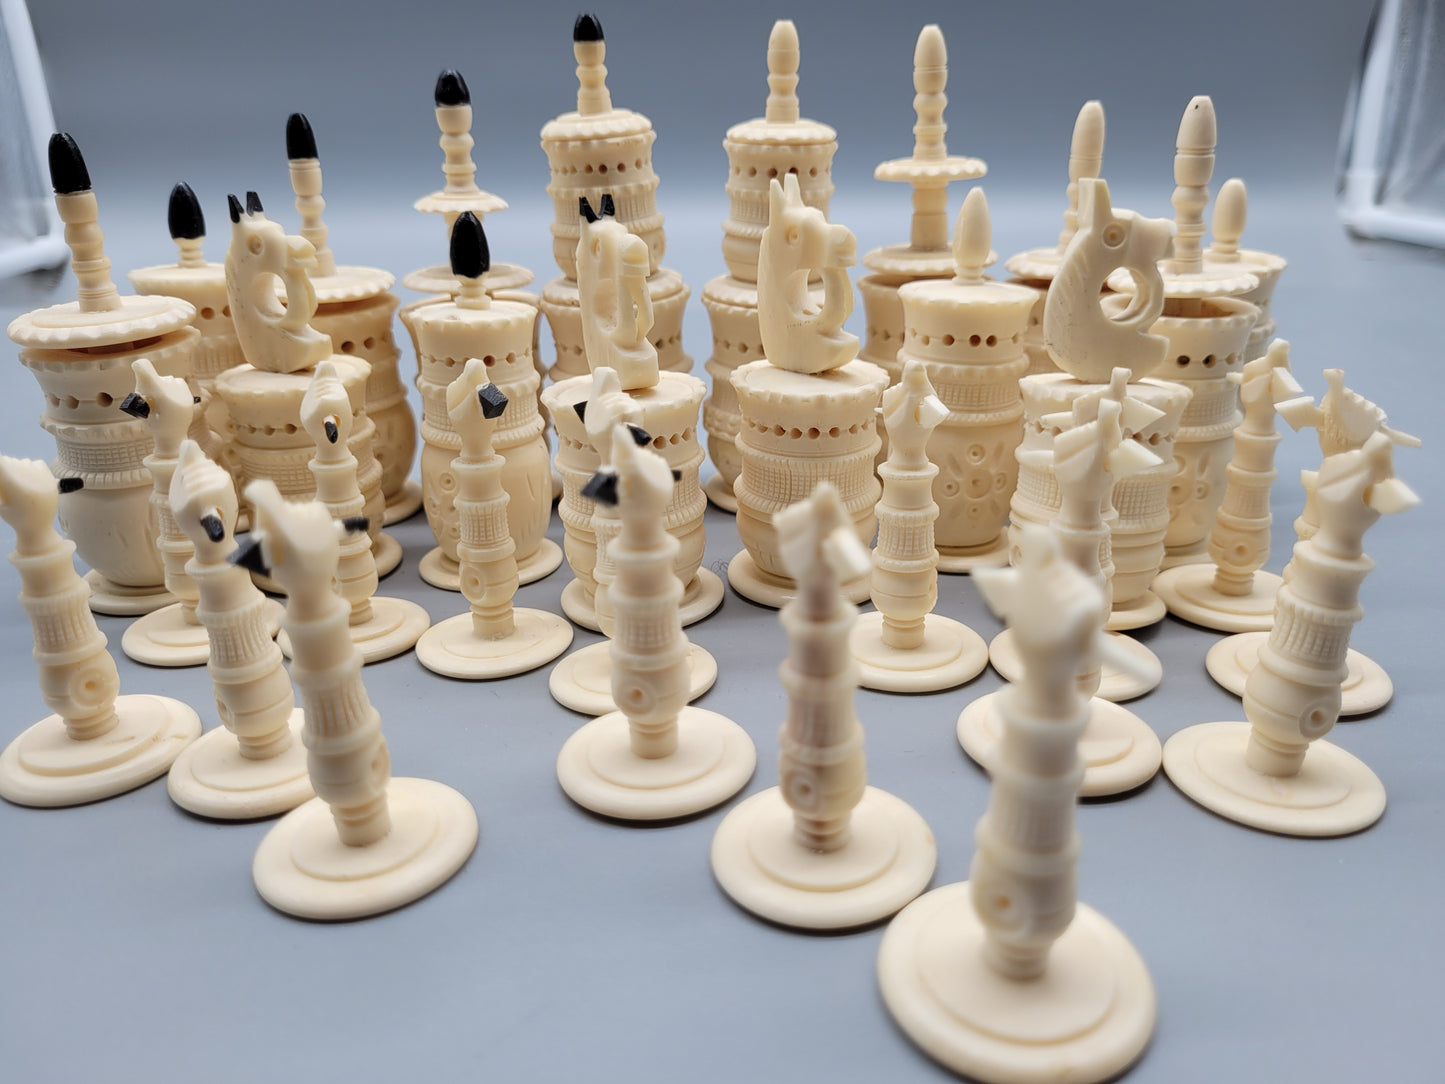 Selten Antikes Schachspiel Handarbeit  - 32 Schachfiguren  Sammlerstück